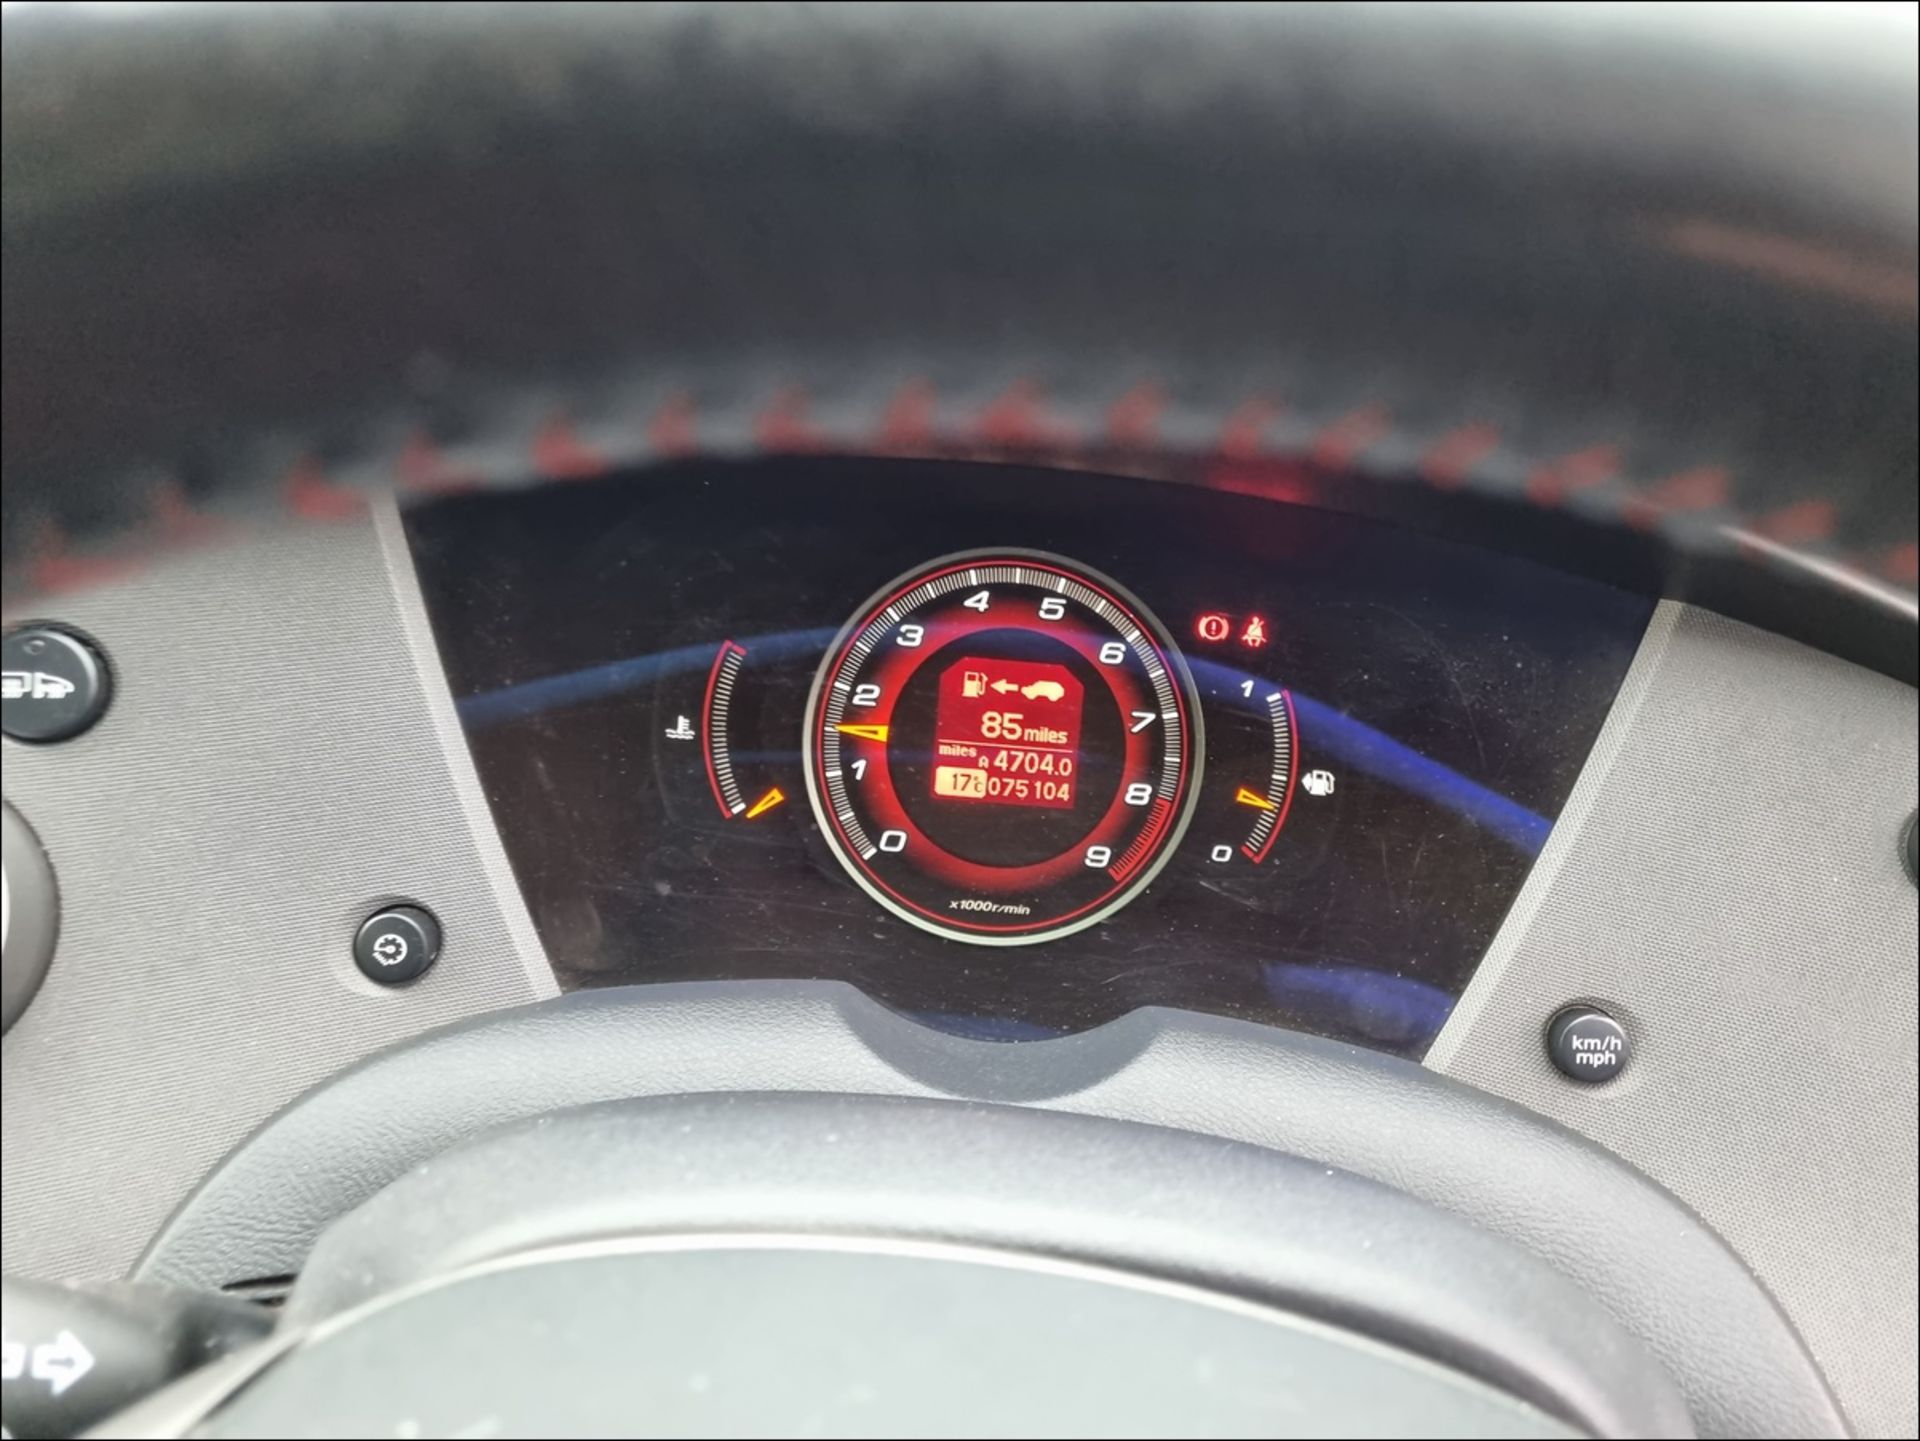 08/58 HONDA CIVIC TYPE-R GT I-VTEC - 1998cc 3dr Hatchback (Red, 75k) - Image 13 of 16